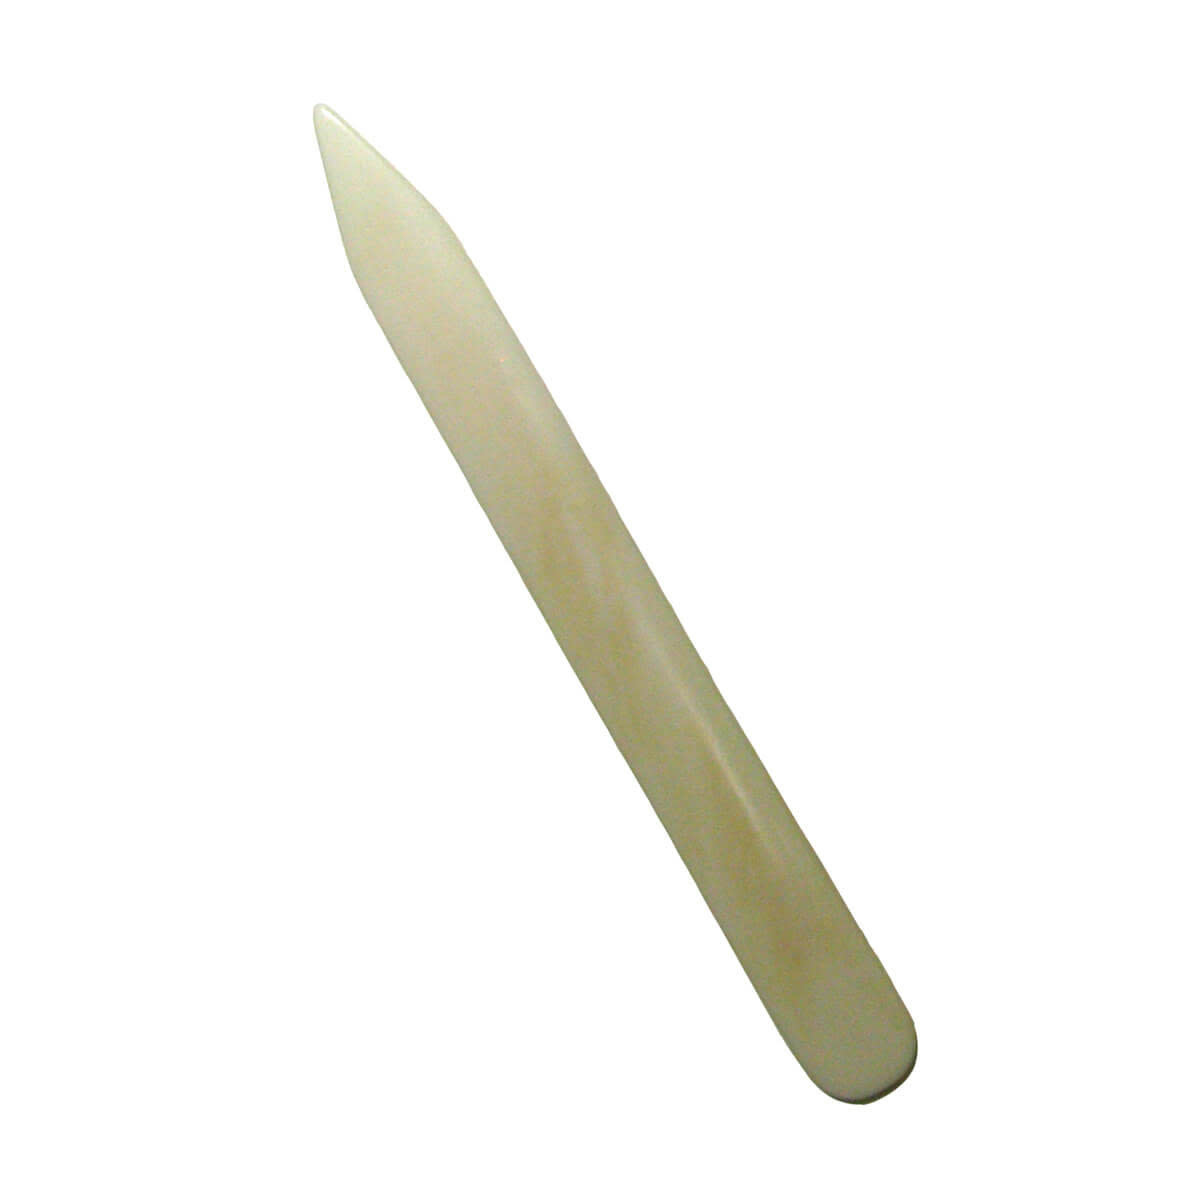 Bone folder - real bone - Jatagan - knife making supplies